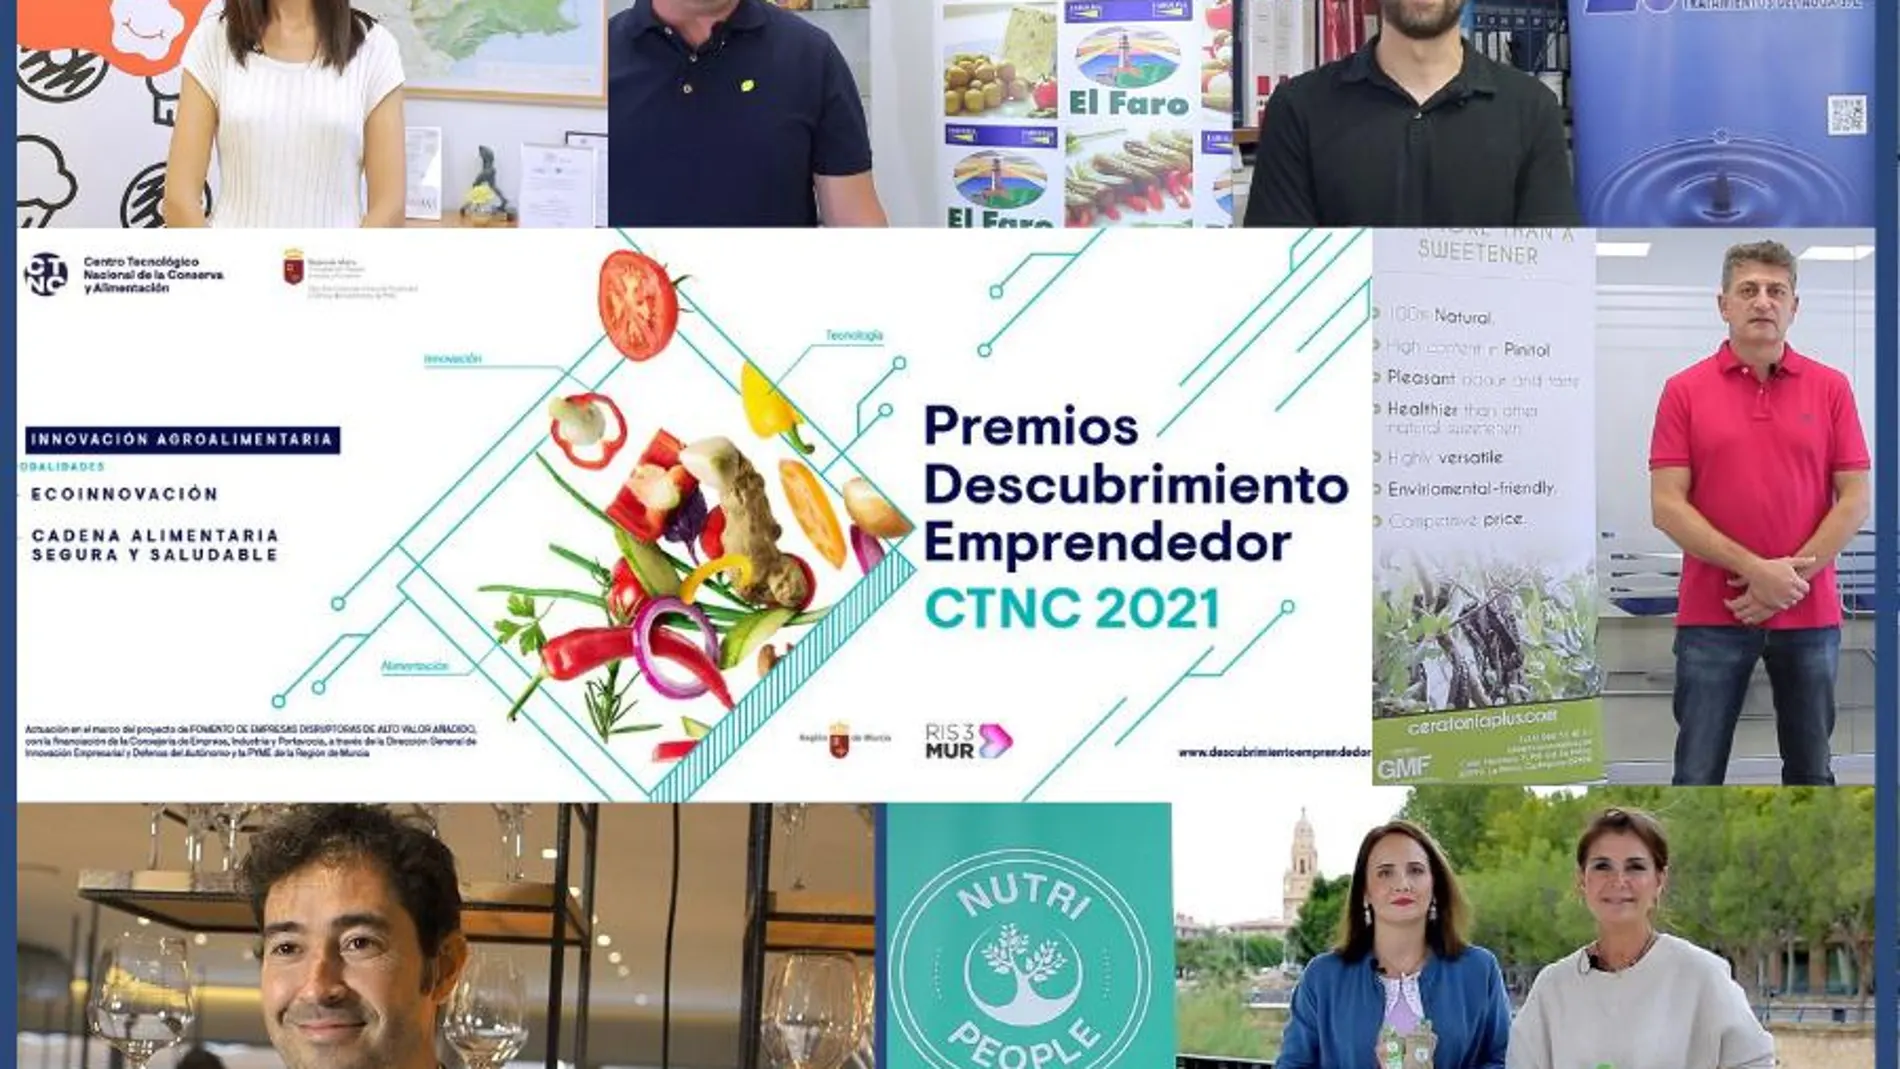 El CTNC anuncia los 6 finalistas de los Premios Descubrimiento Emprendedor a la Ecoinnovación y Cadena Alimentaria Segura y Saludable